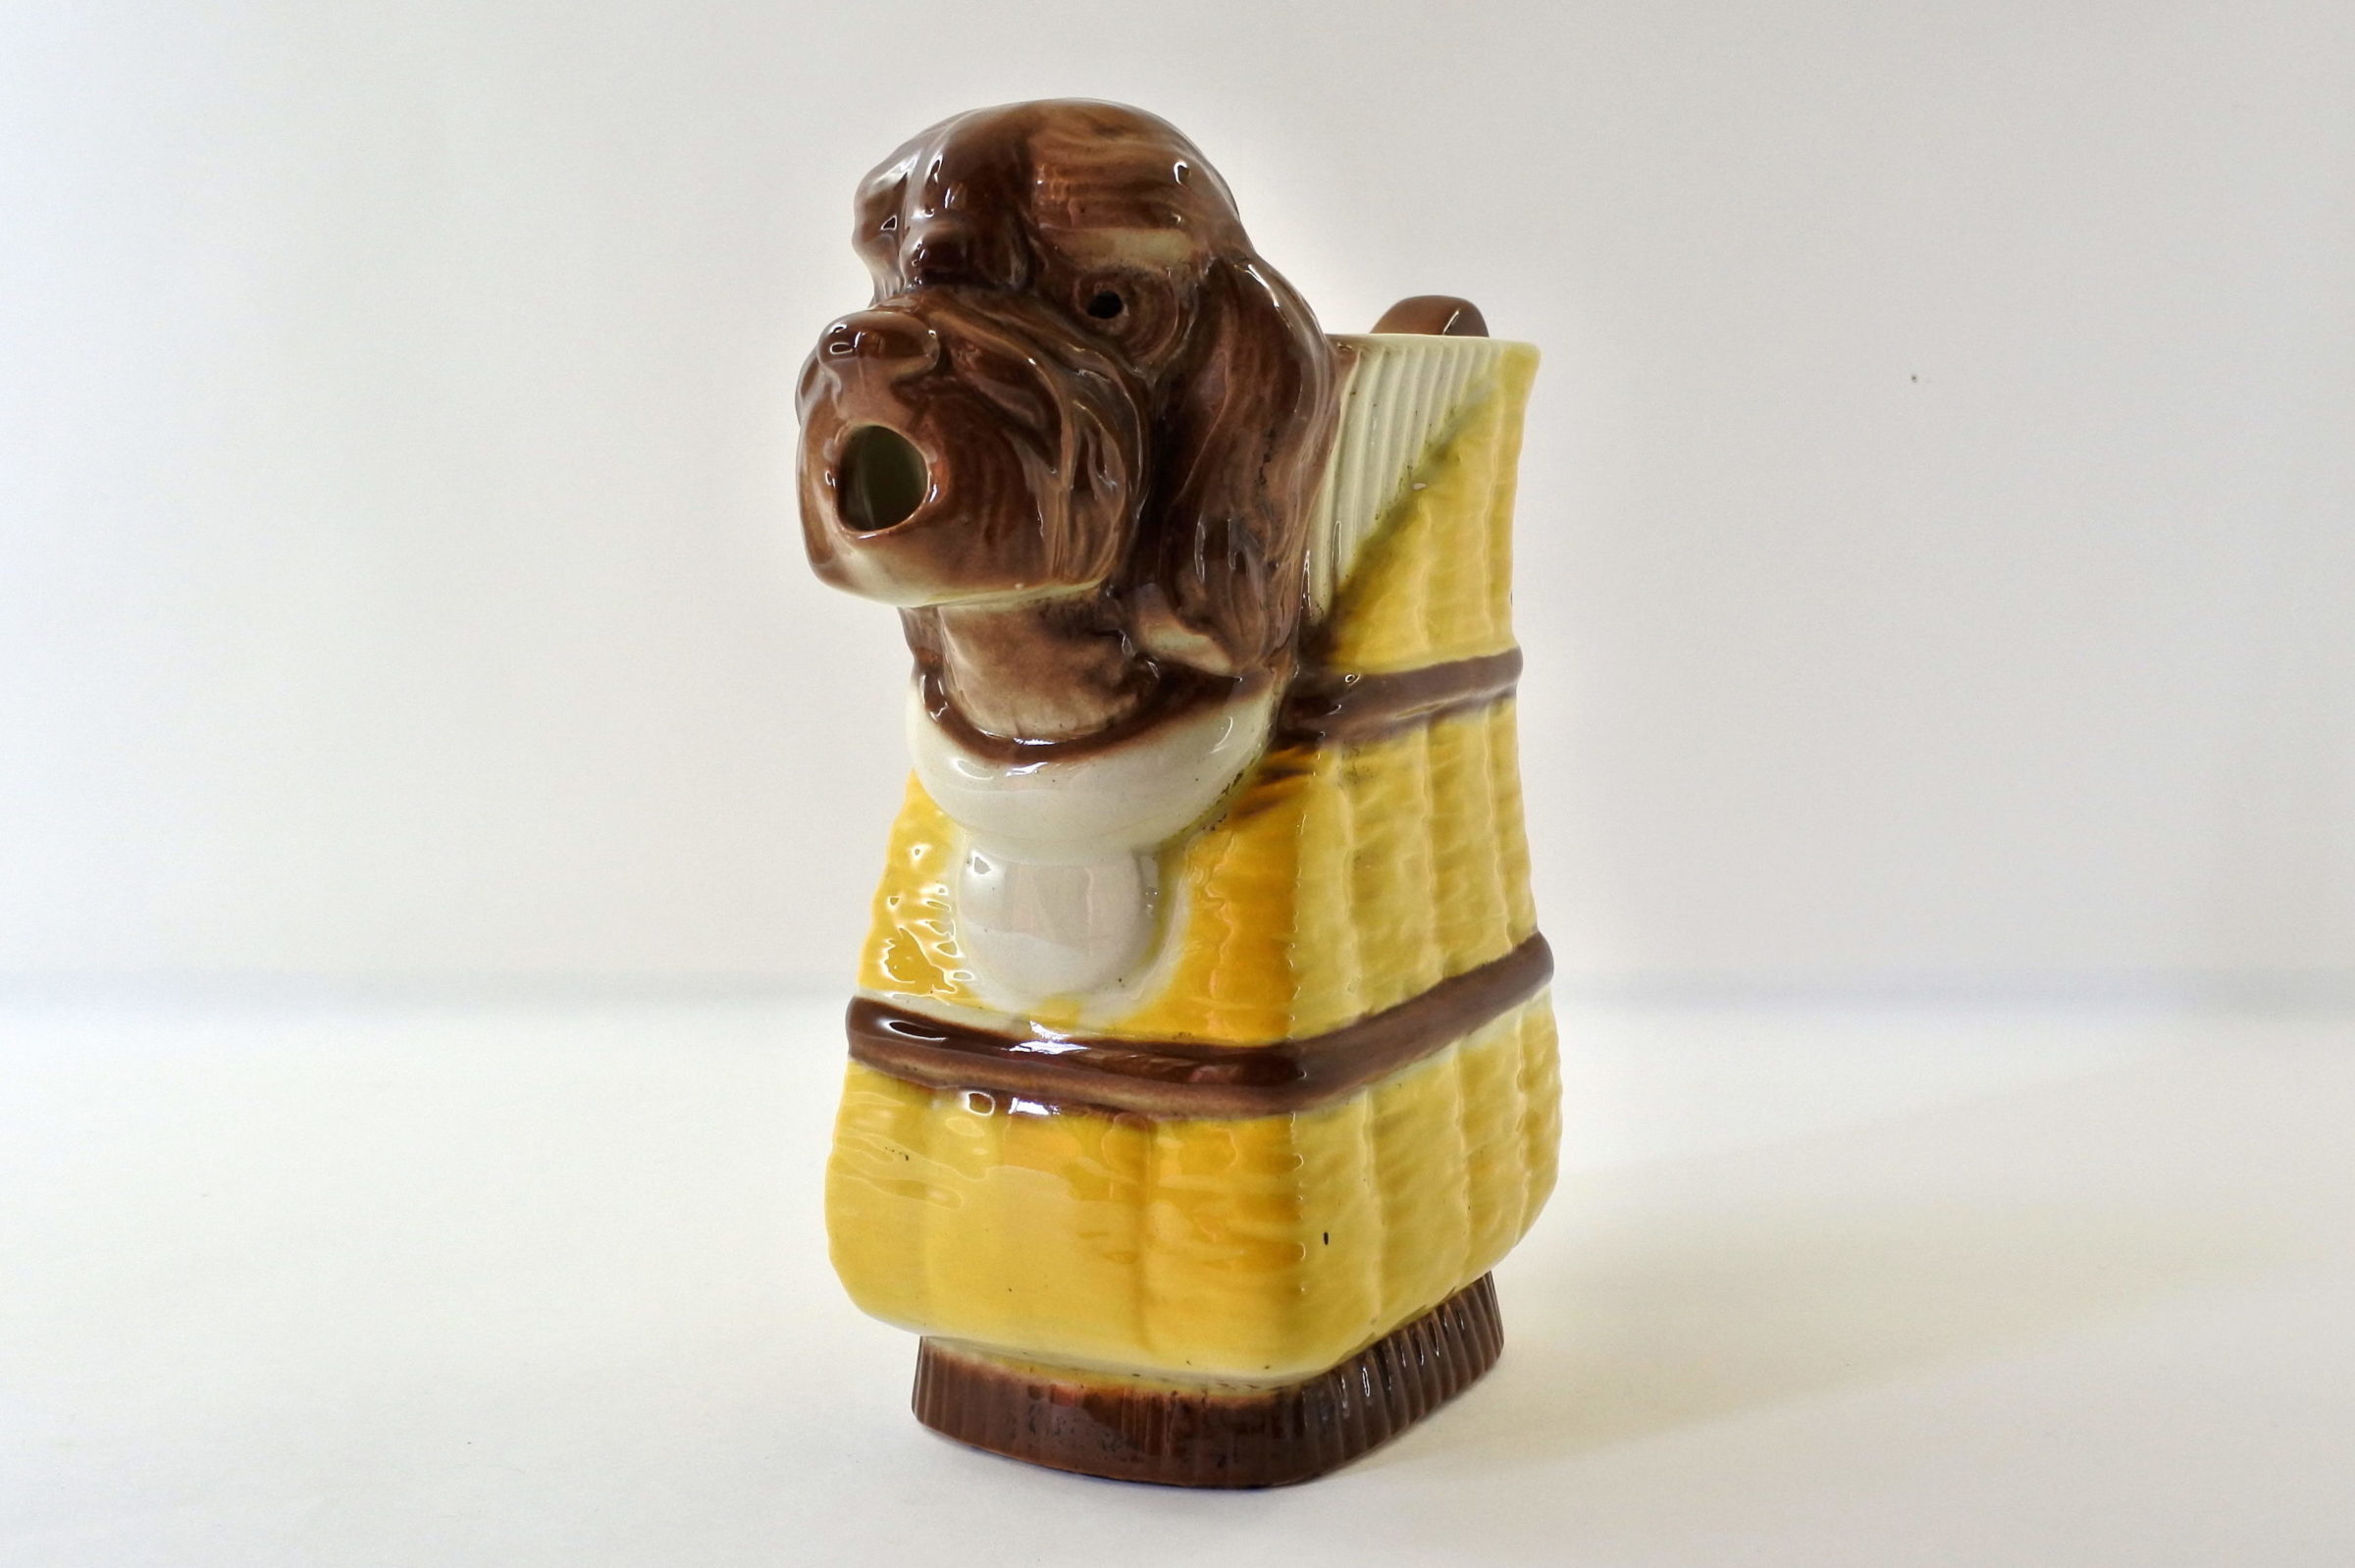 Brocca in ceramica barbotine a forma di cane che esce dal cestino